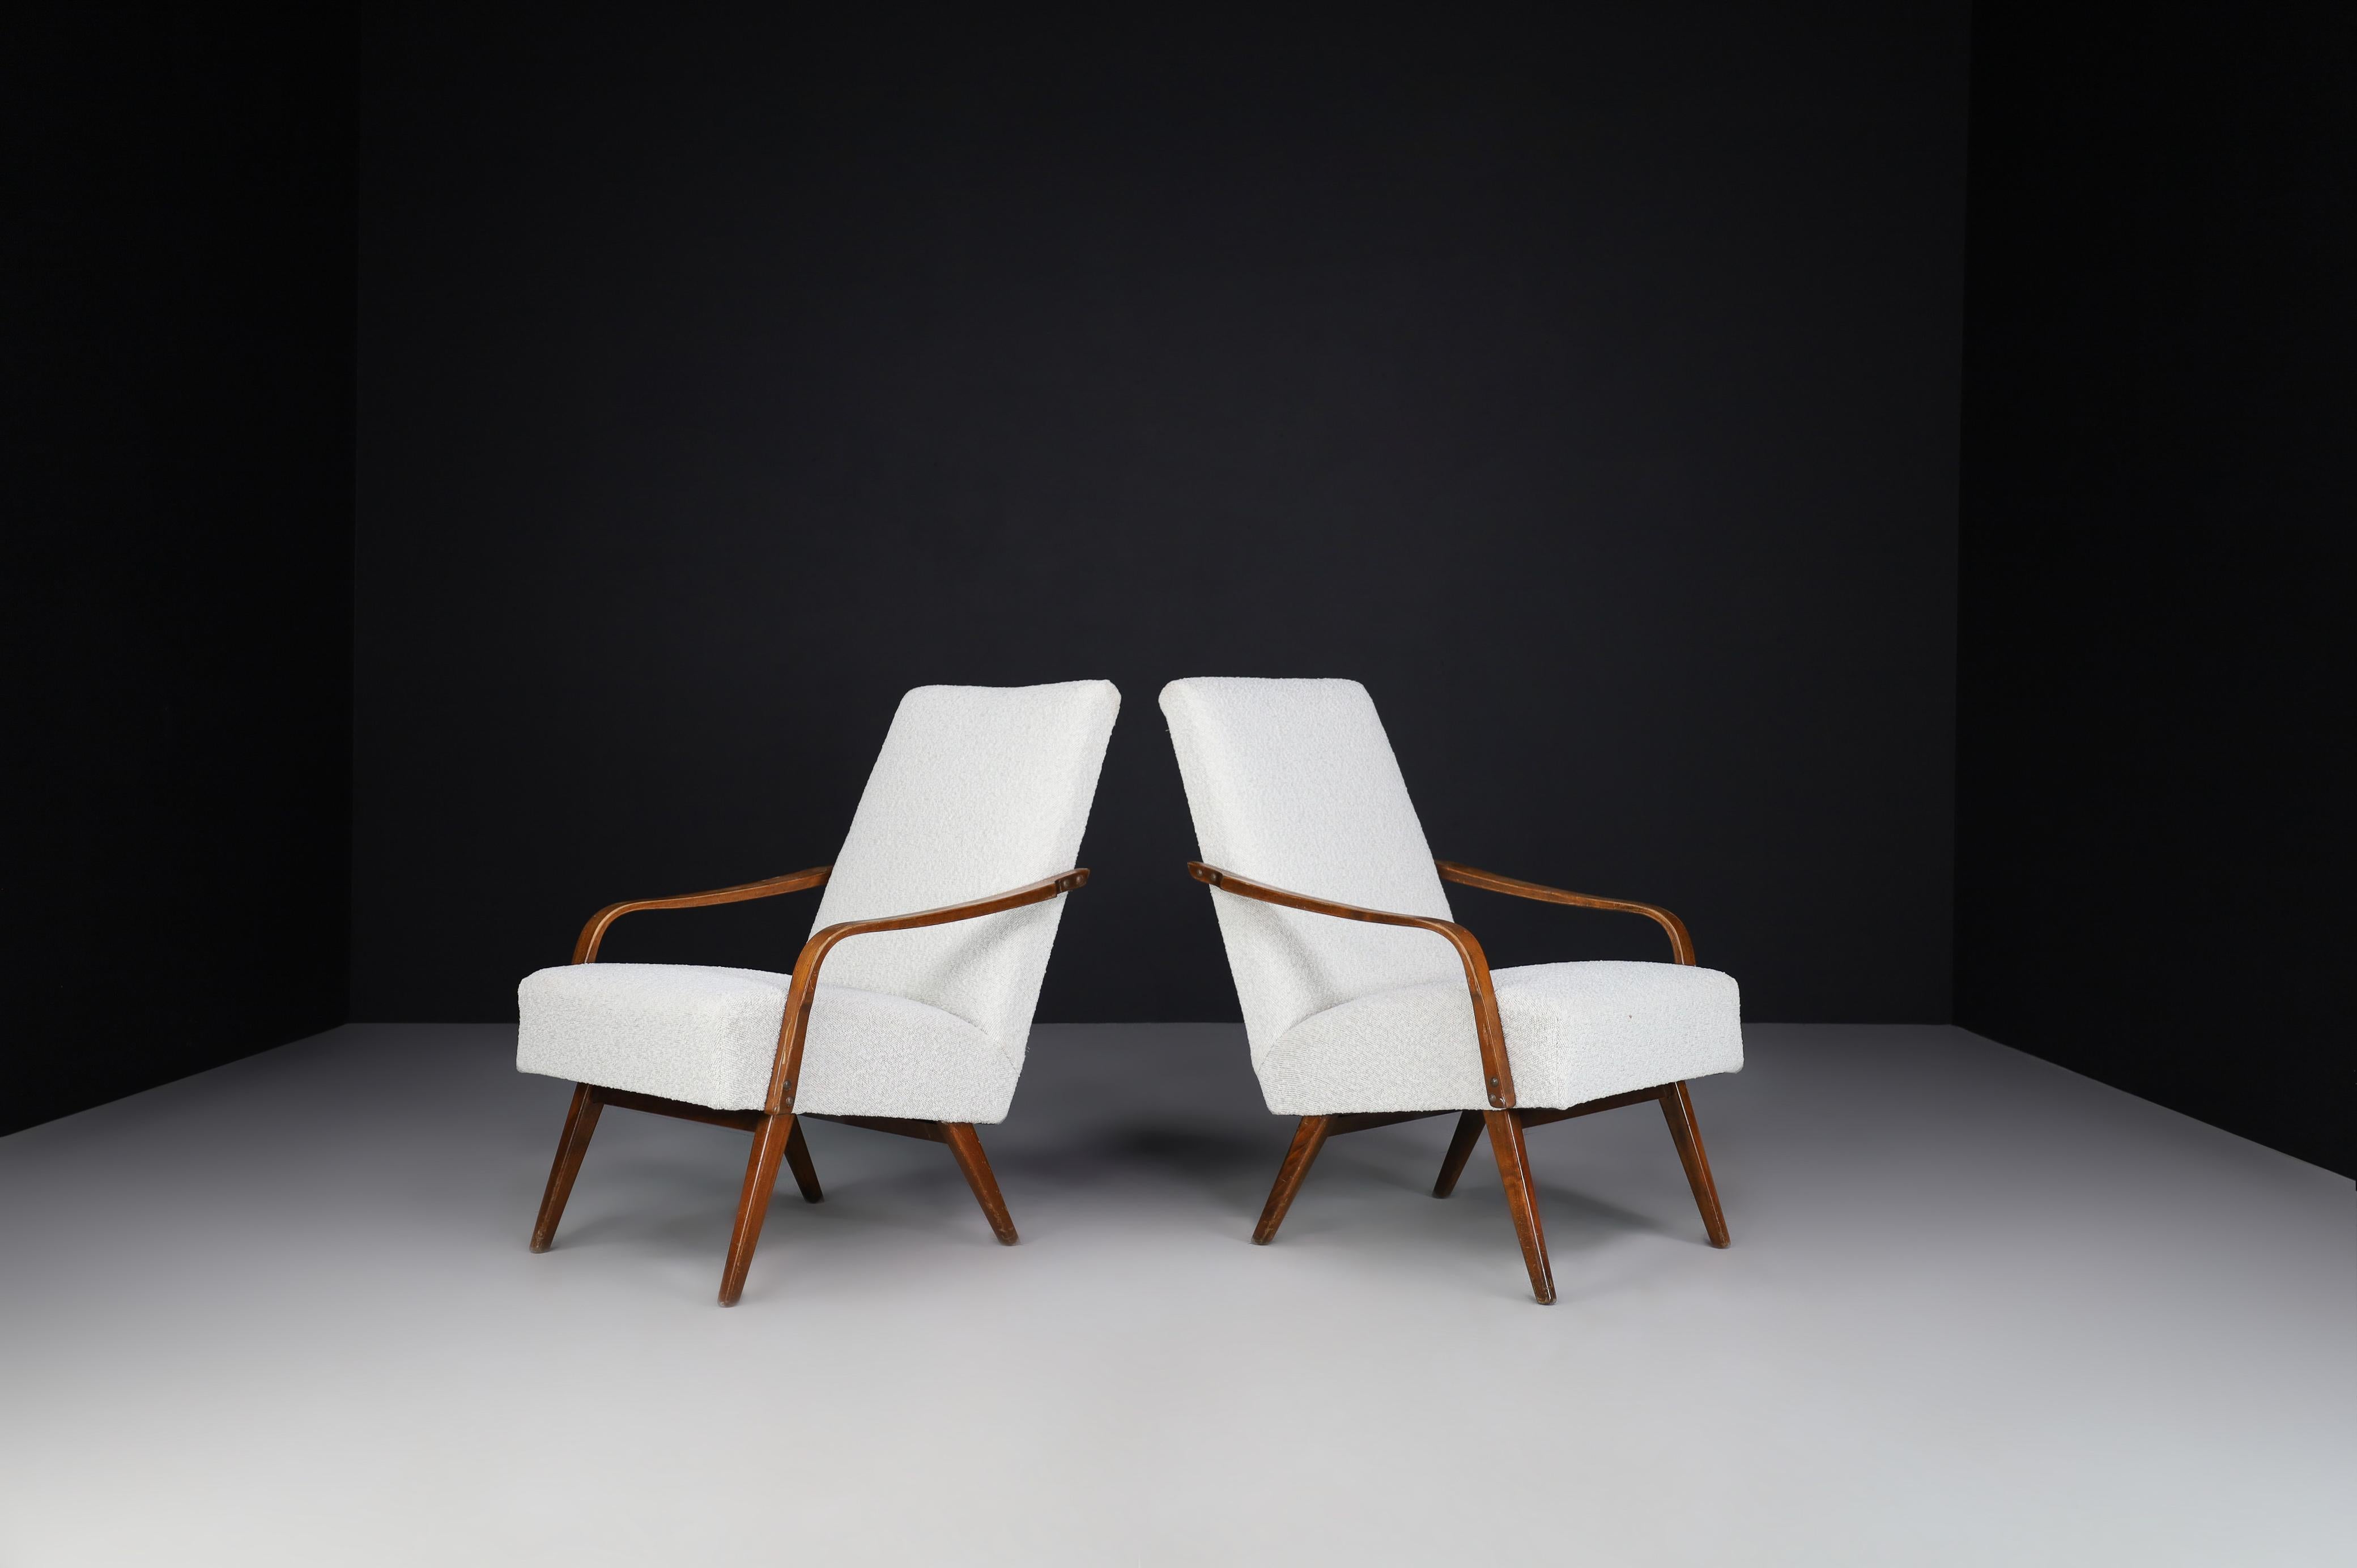 Sessel aus der Mitte des Jahrhunderts, hergestellt und entworfen in Praque 1950s. 

Sessel aus der Mitte des Jahrhunderts, hergestellt und entworfen in Praque 1950s. Diese Sessel wurden gerade mit Bouclé-Stoff neu bezogen und haben ein schönes,